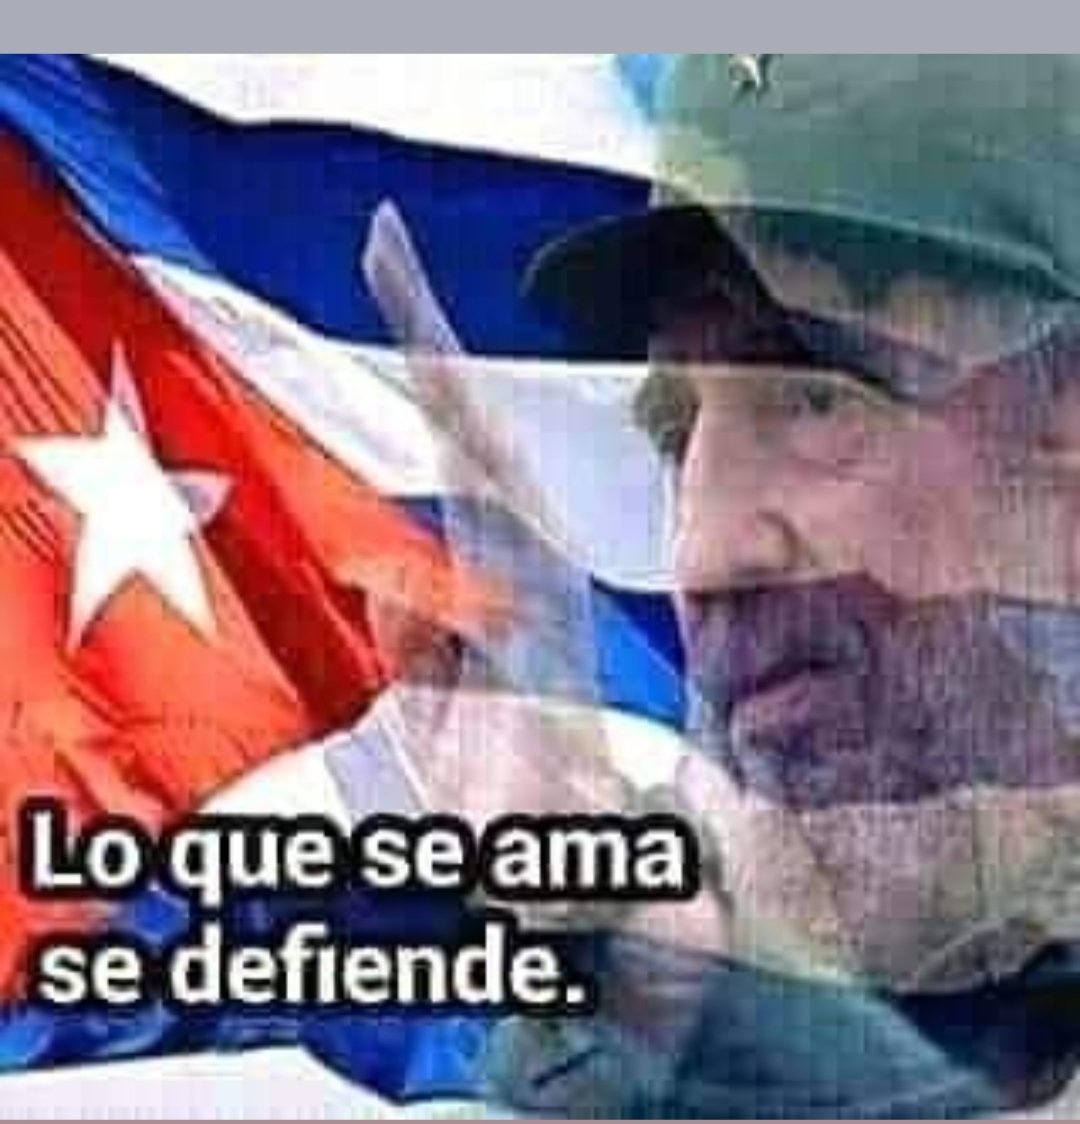 Buenos días herman@s, vamos a defender lo nuestro. Seguimos en combate. #FidelPorSiempre #DeZurdaTeam